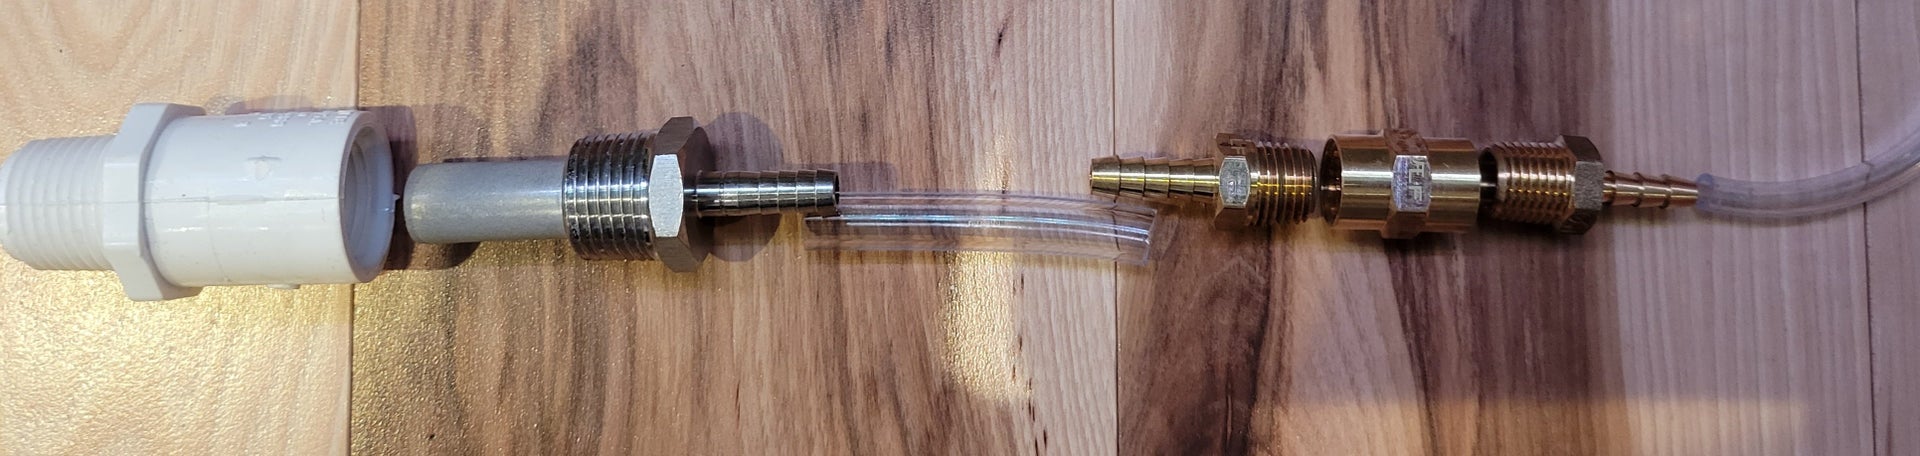 Water Liquid Wood Door Test tube